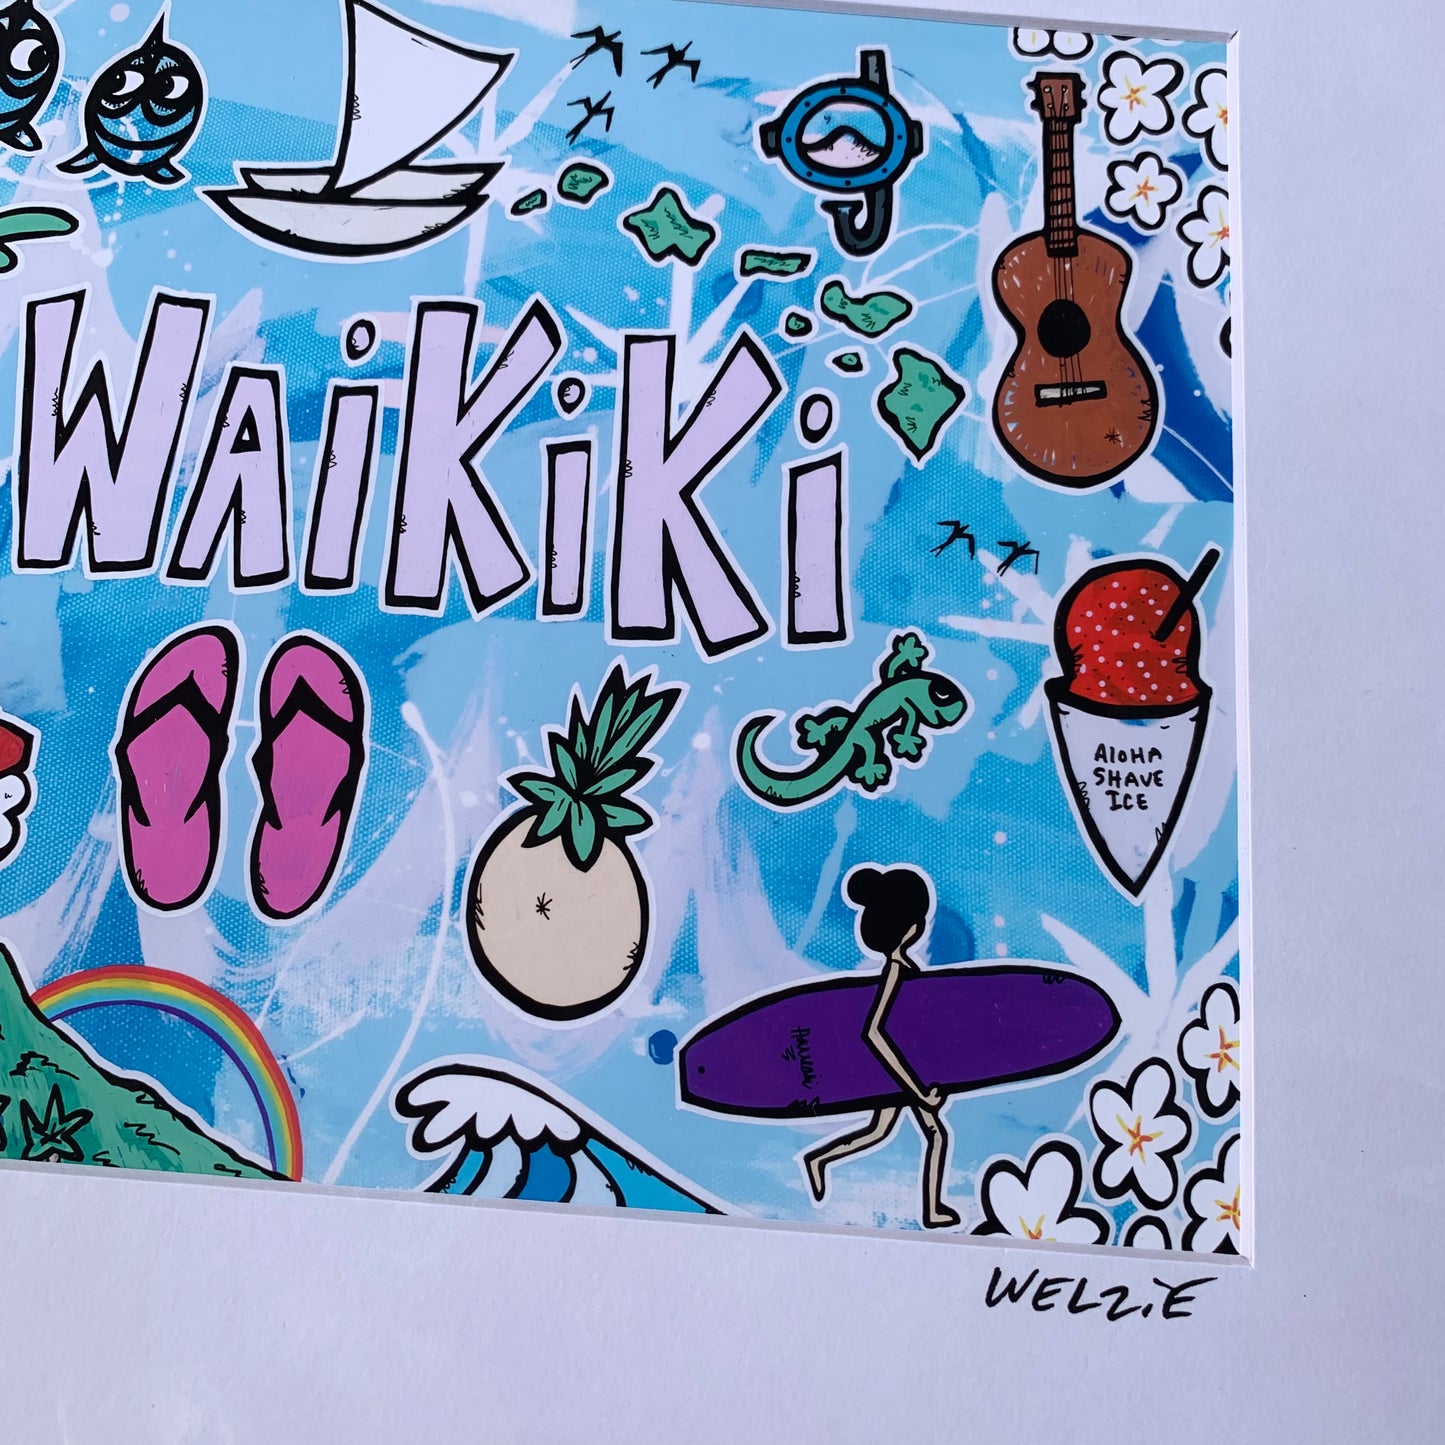 「ウェルジーアート」Welzie Art アートプリント11×14inch(28.0×35.5cm) WAIKIKI